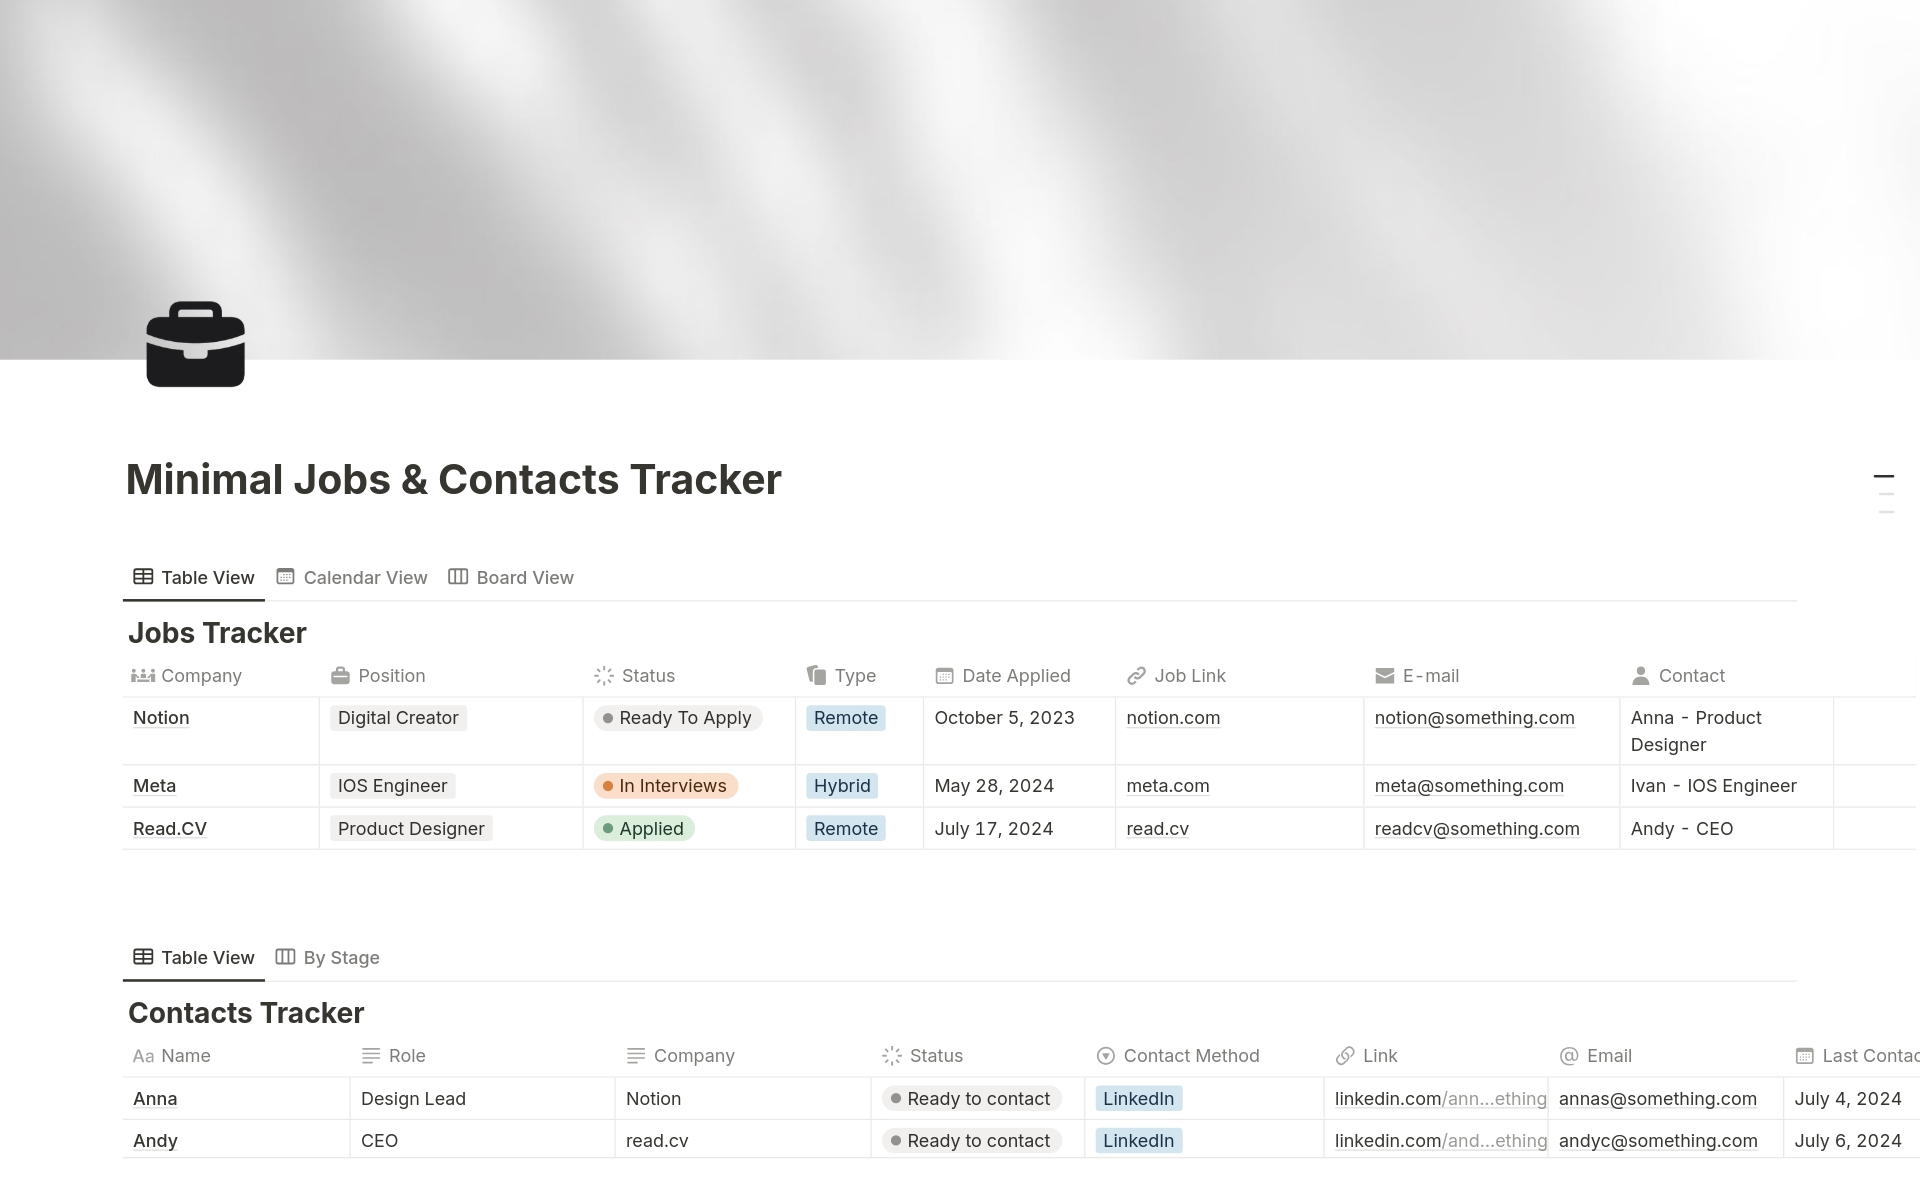 Vista previa de una plantilla para Minimal Jobs & Contacts Tracker